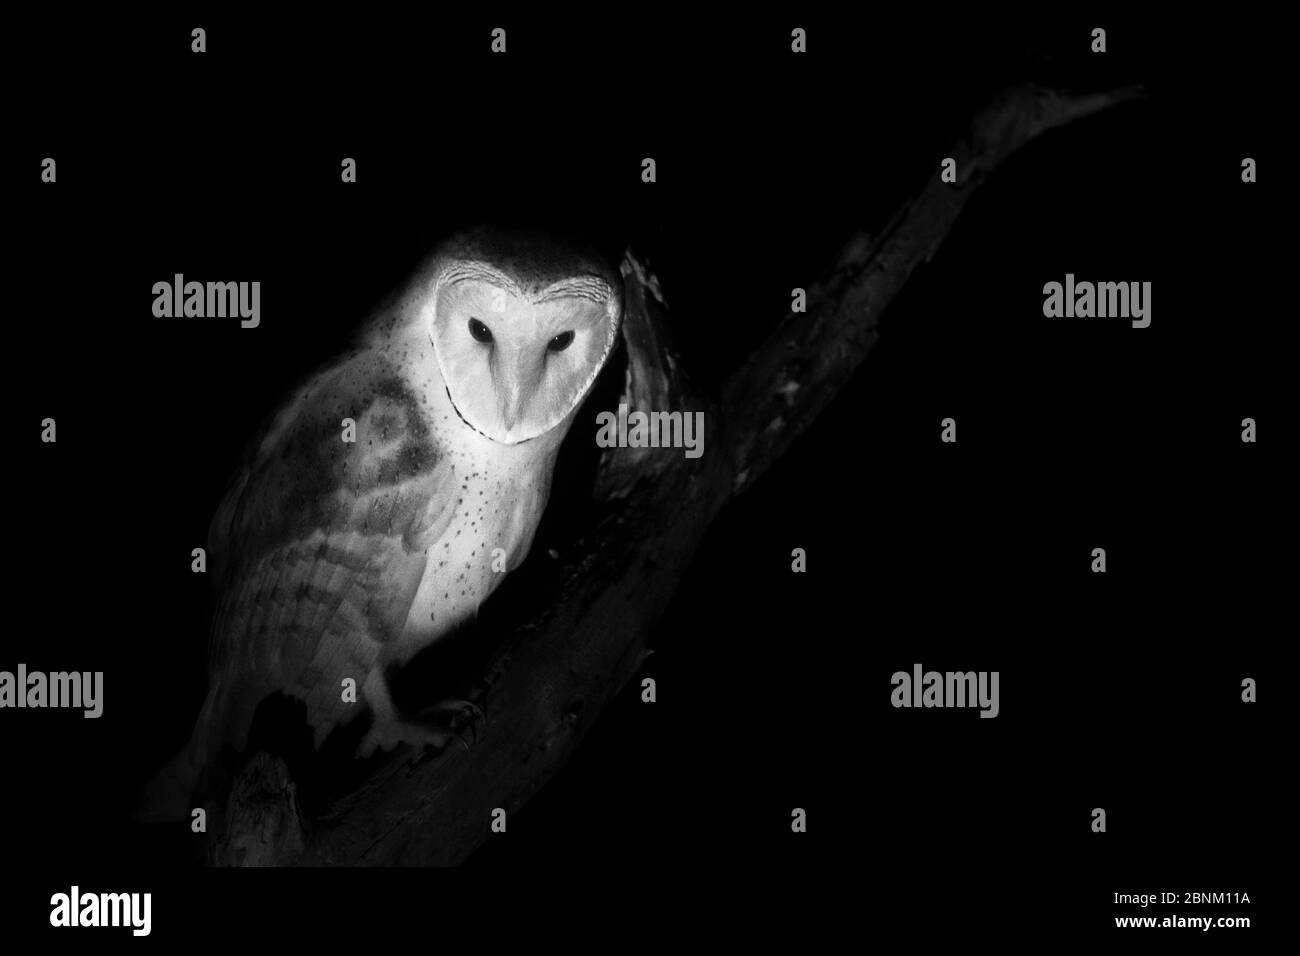 Hibou de la grange (Tyto alba), pris avec lumière infrarouge la nuit France, janvier. Banque D'Images